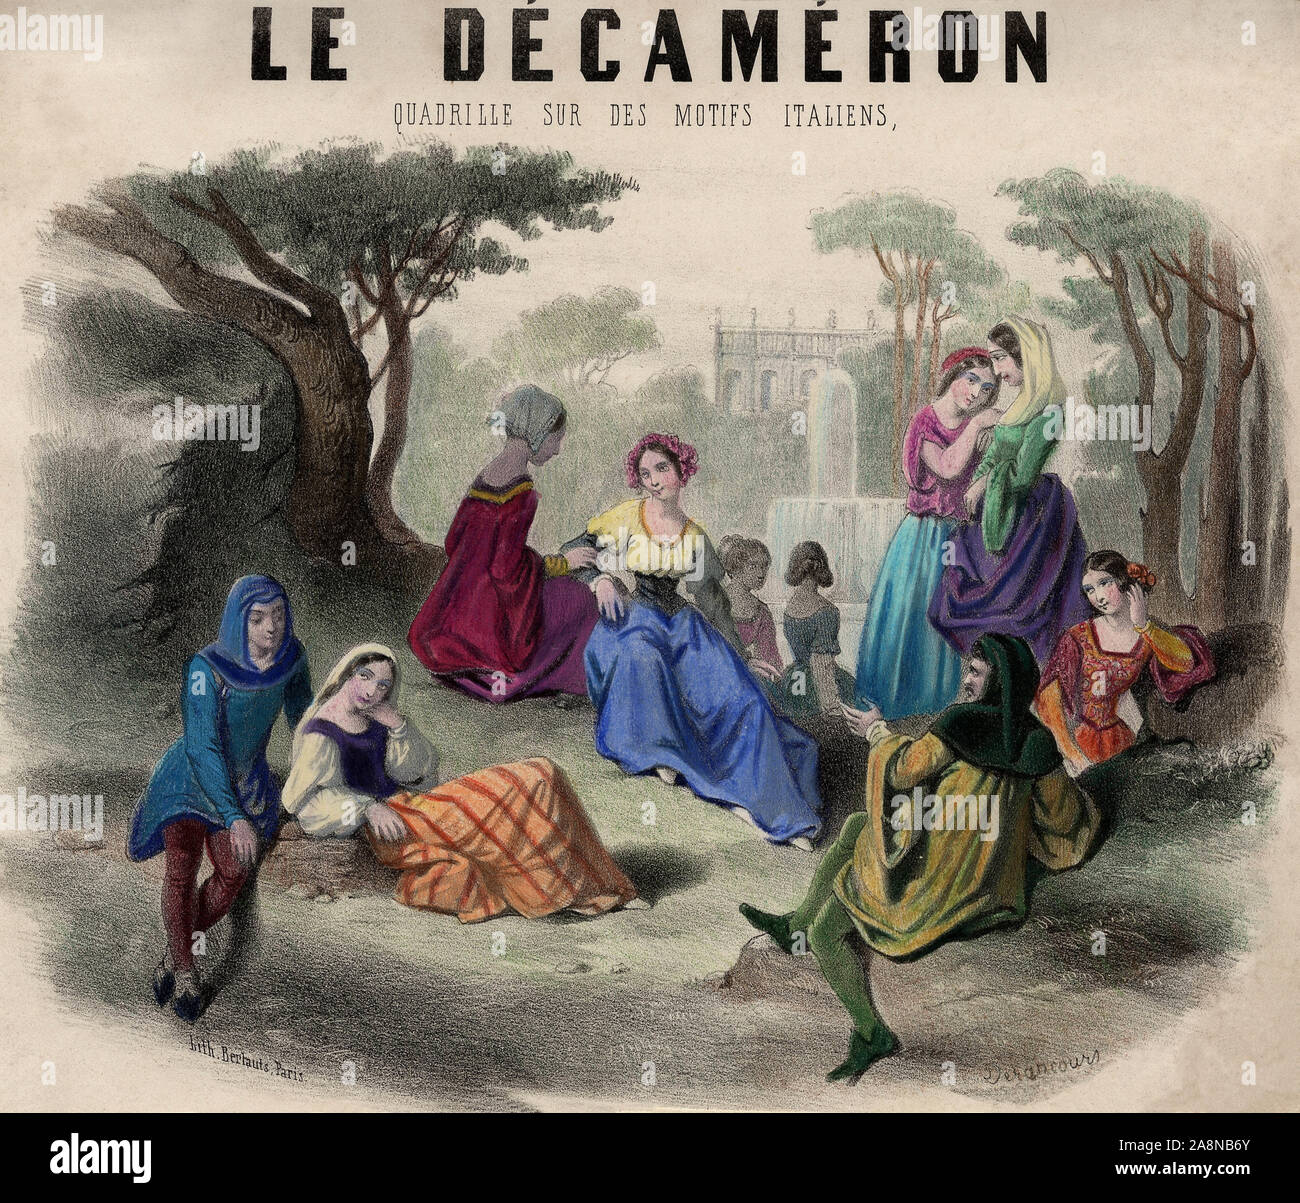 'Le Decameron' de Boccace pour quadrille. Lithographie, 19e siecle. Stock Photo